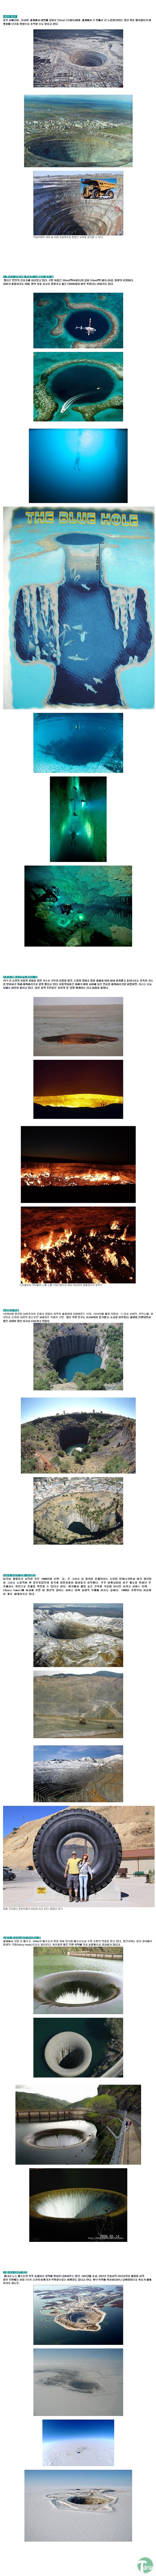 1 (4).jpg : 지구에서 가장큰 구멍들.jpg